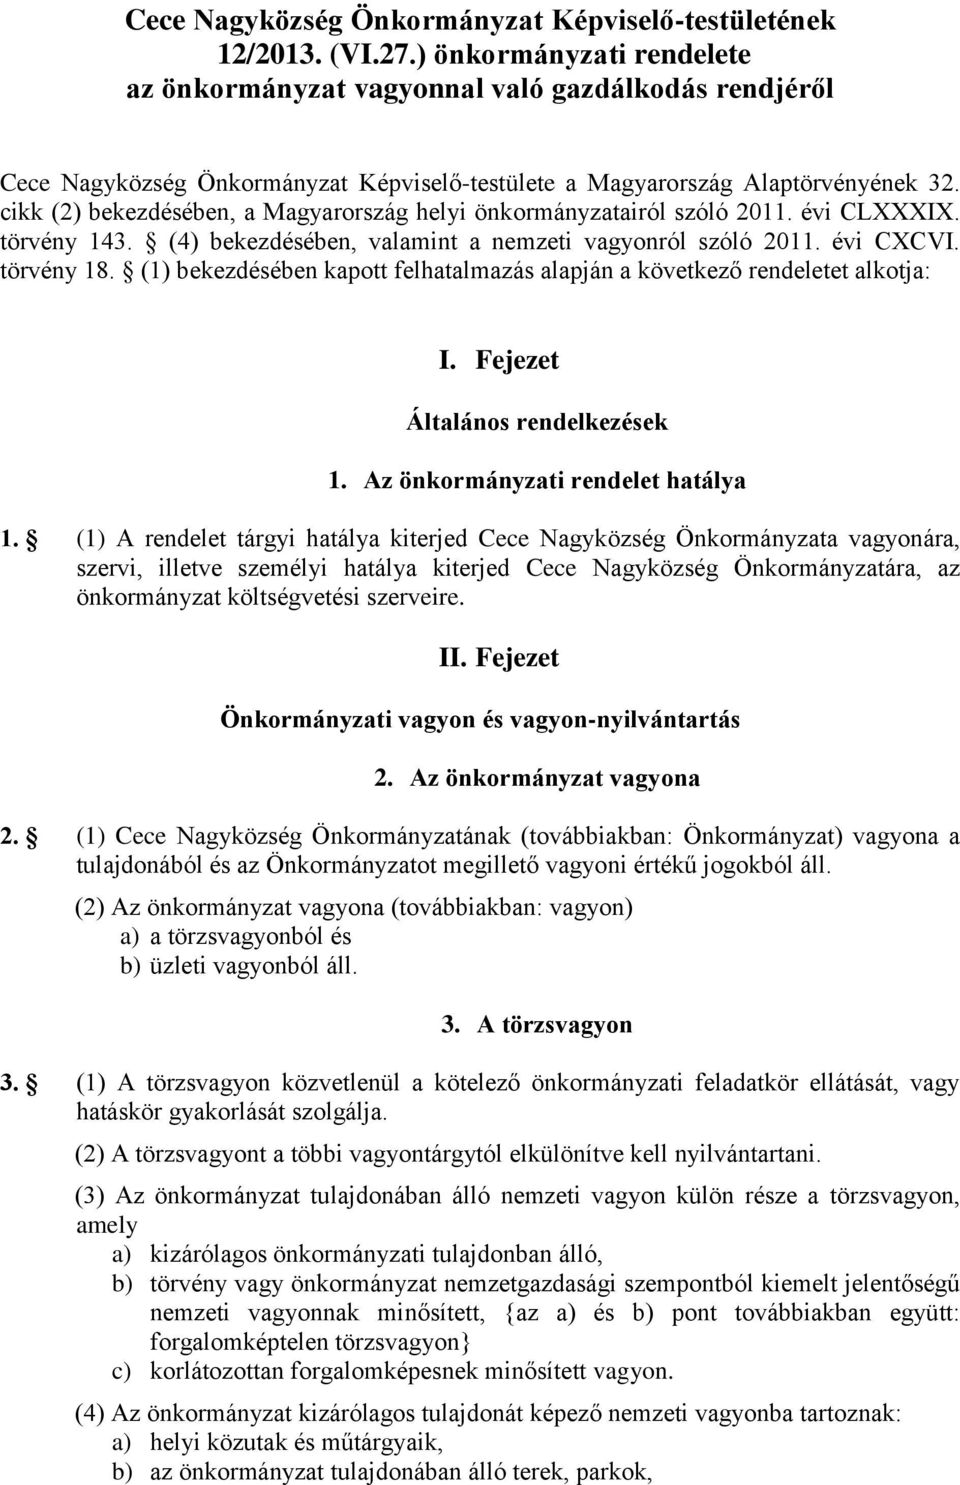 cikk (2) bekezdésében, a Magyarország helyi önkormányzatairól szóló 2011. évi CLXXXIX. törvény 143. (4) bekezdésében, valamint a nemzeti vagyonról szóló 2011. évi CXCVI. törvény 18.